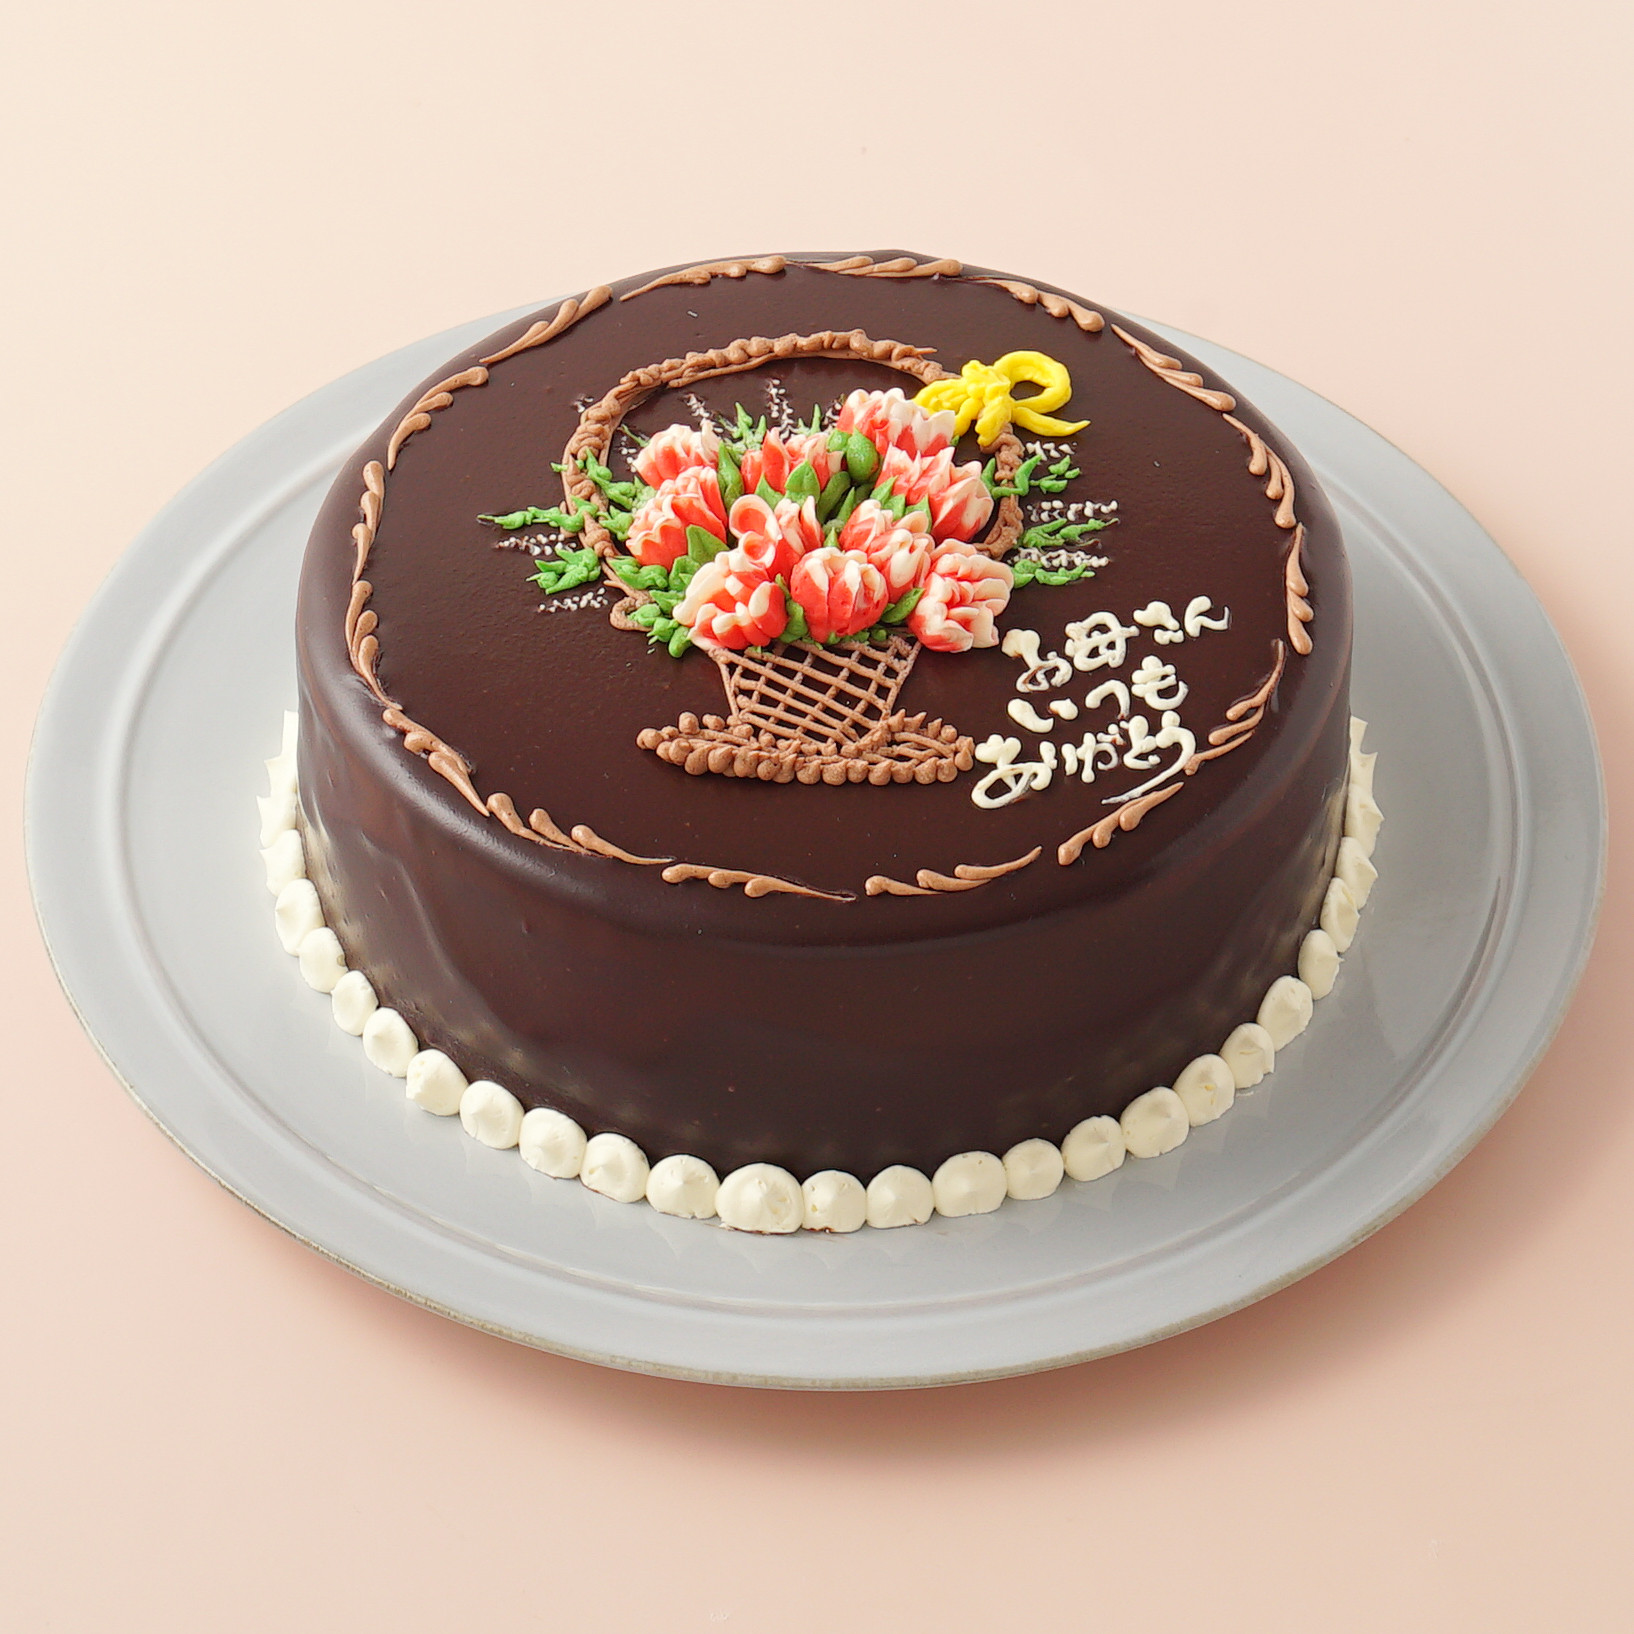 カーネーションのチョコレートクリームデコレーション 《Cake.jp限定》 7